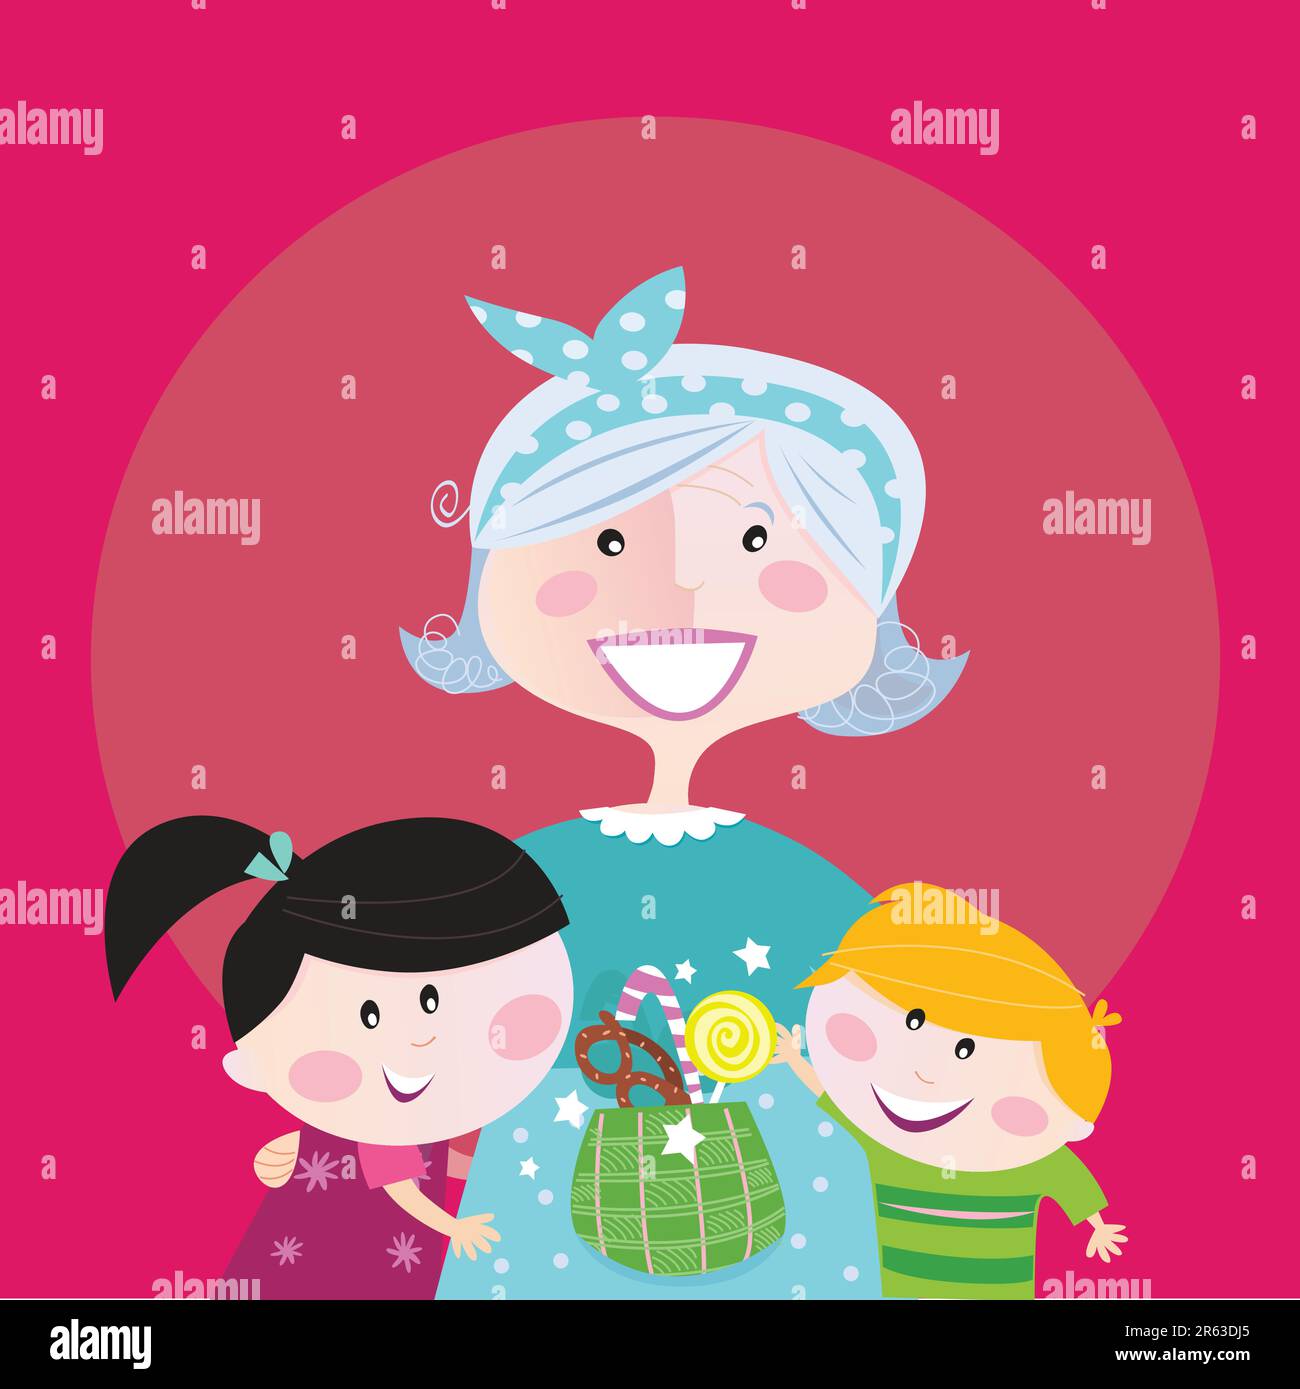 Supergroßmutter mit Kindern - Enkeltochter und Enkelsohn. Junge und Mädchen umarmen ihre Oma. Der Junge nimmt süße Süßigkeiten. Stilisierter Vektorcartoon illustr... Stock Vektor